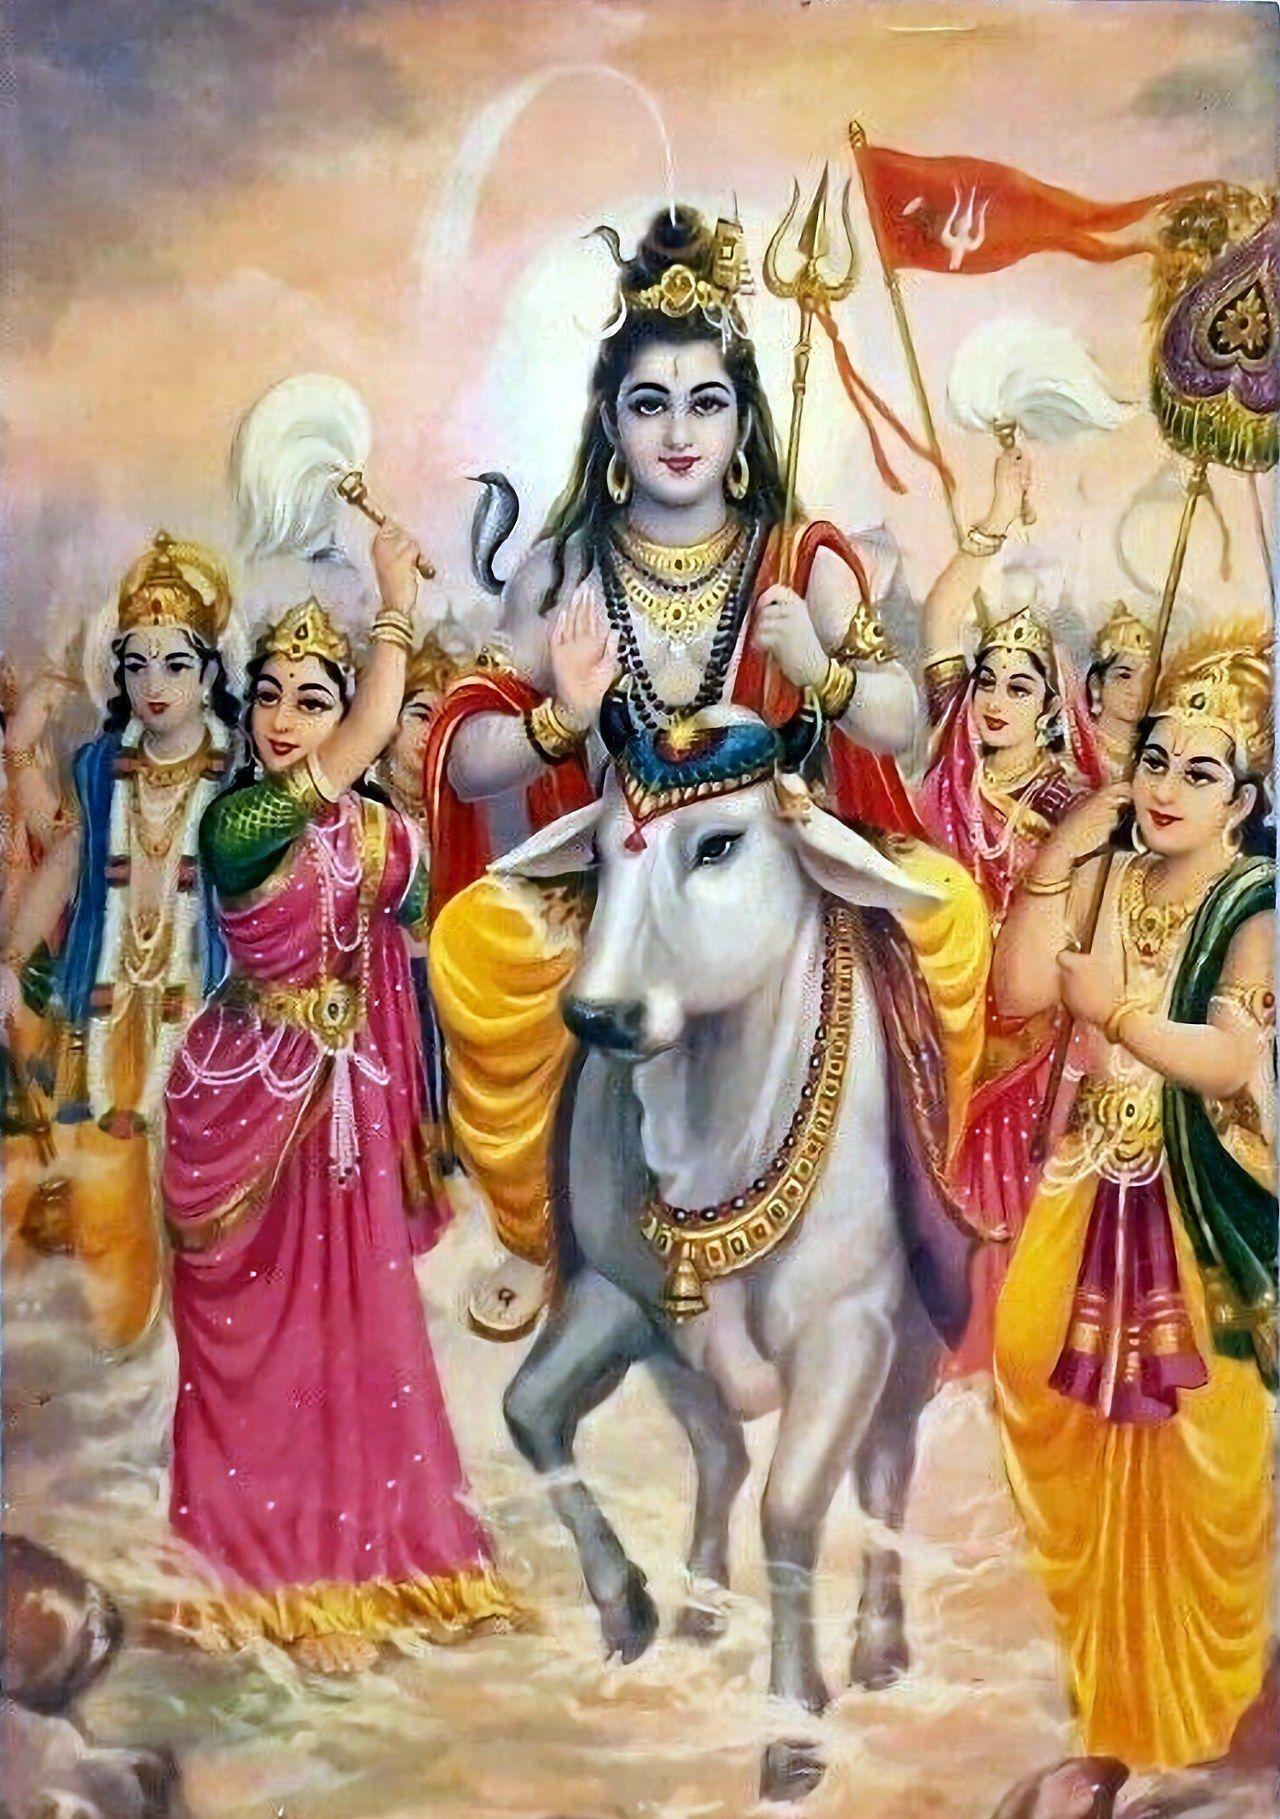 2. Lord shiva family, Shiva